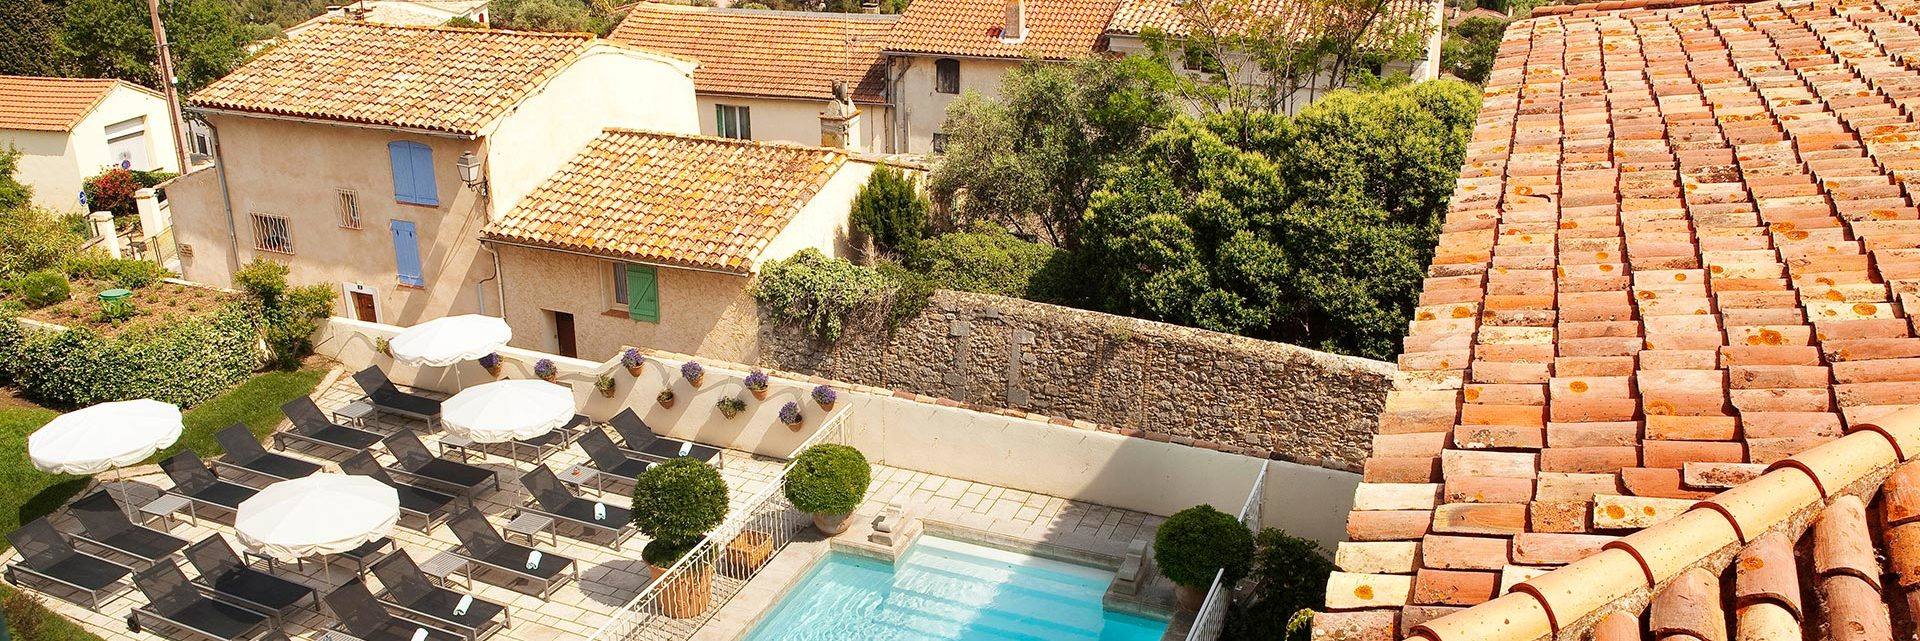 Hôtel de charme, piscine vue sur la Cadière d'Azur